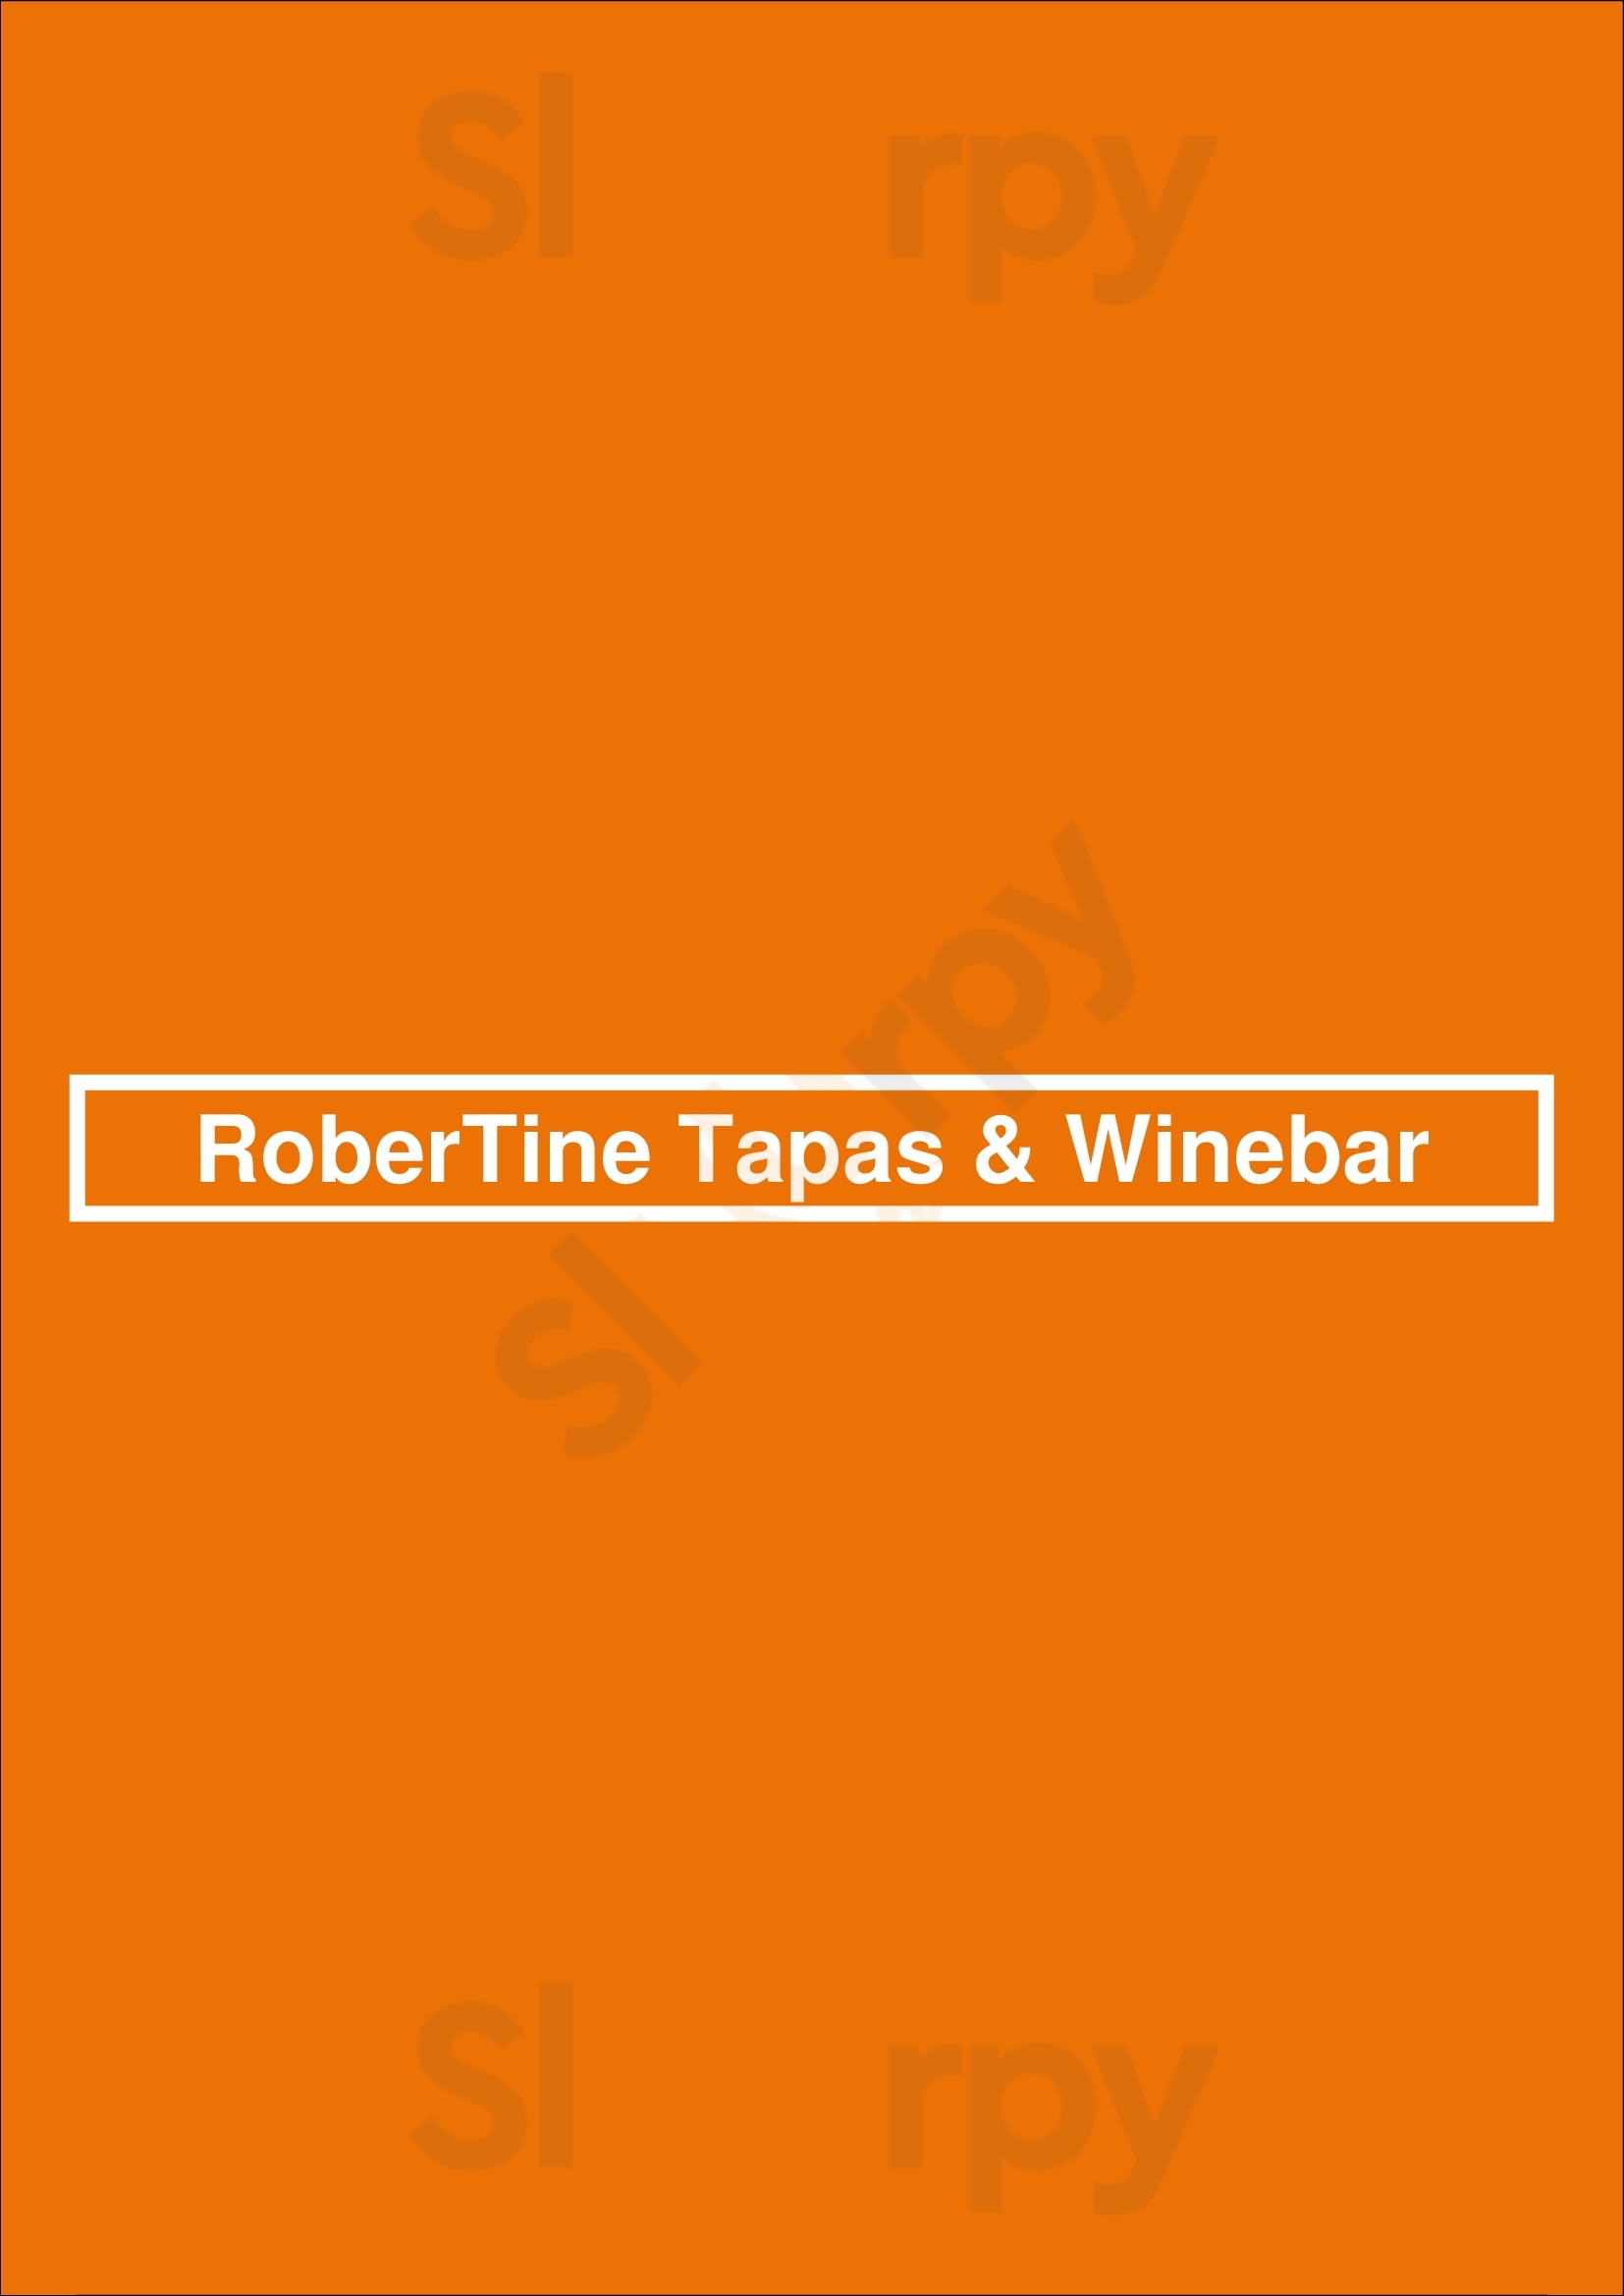 Robertine Tapas & Winebar Lisboa Menu - 1